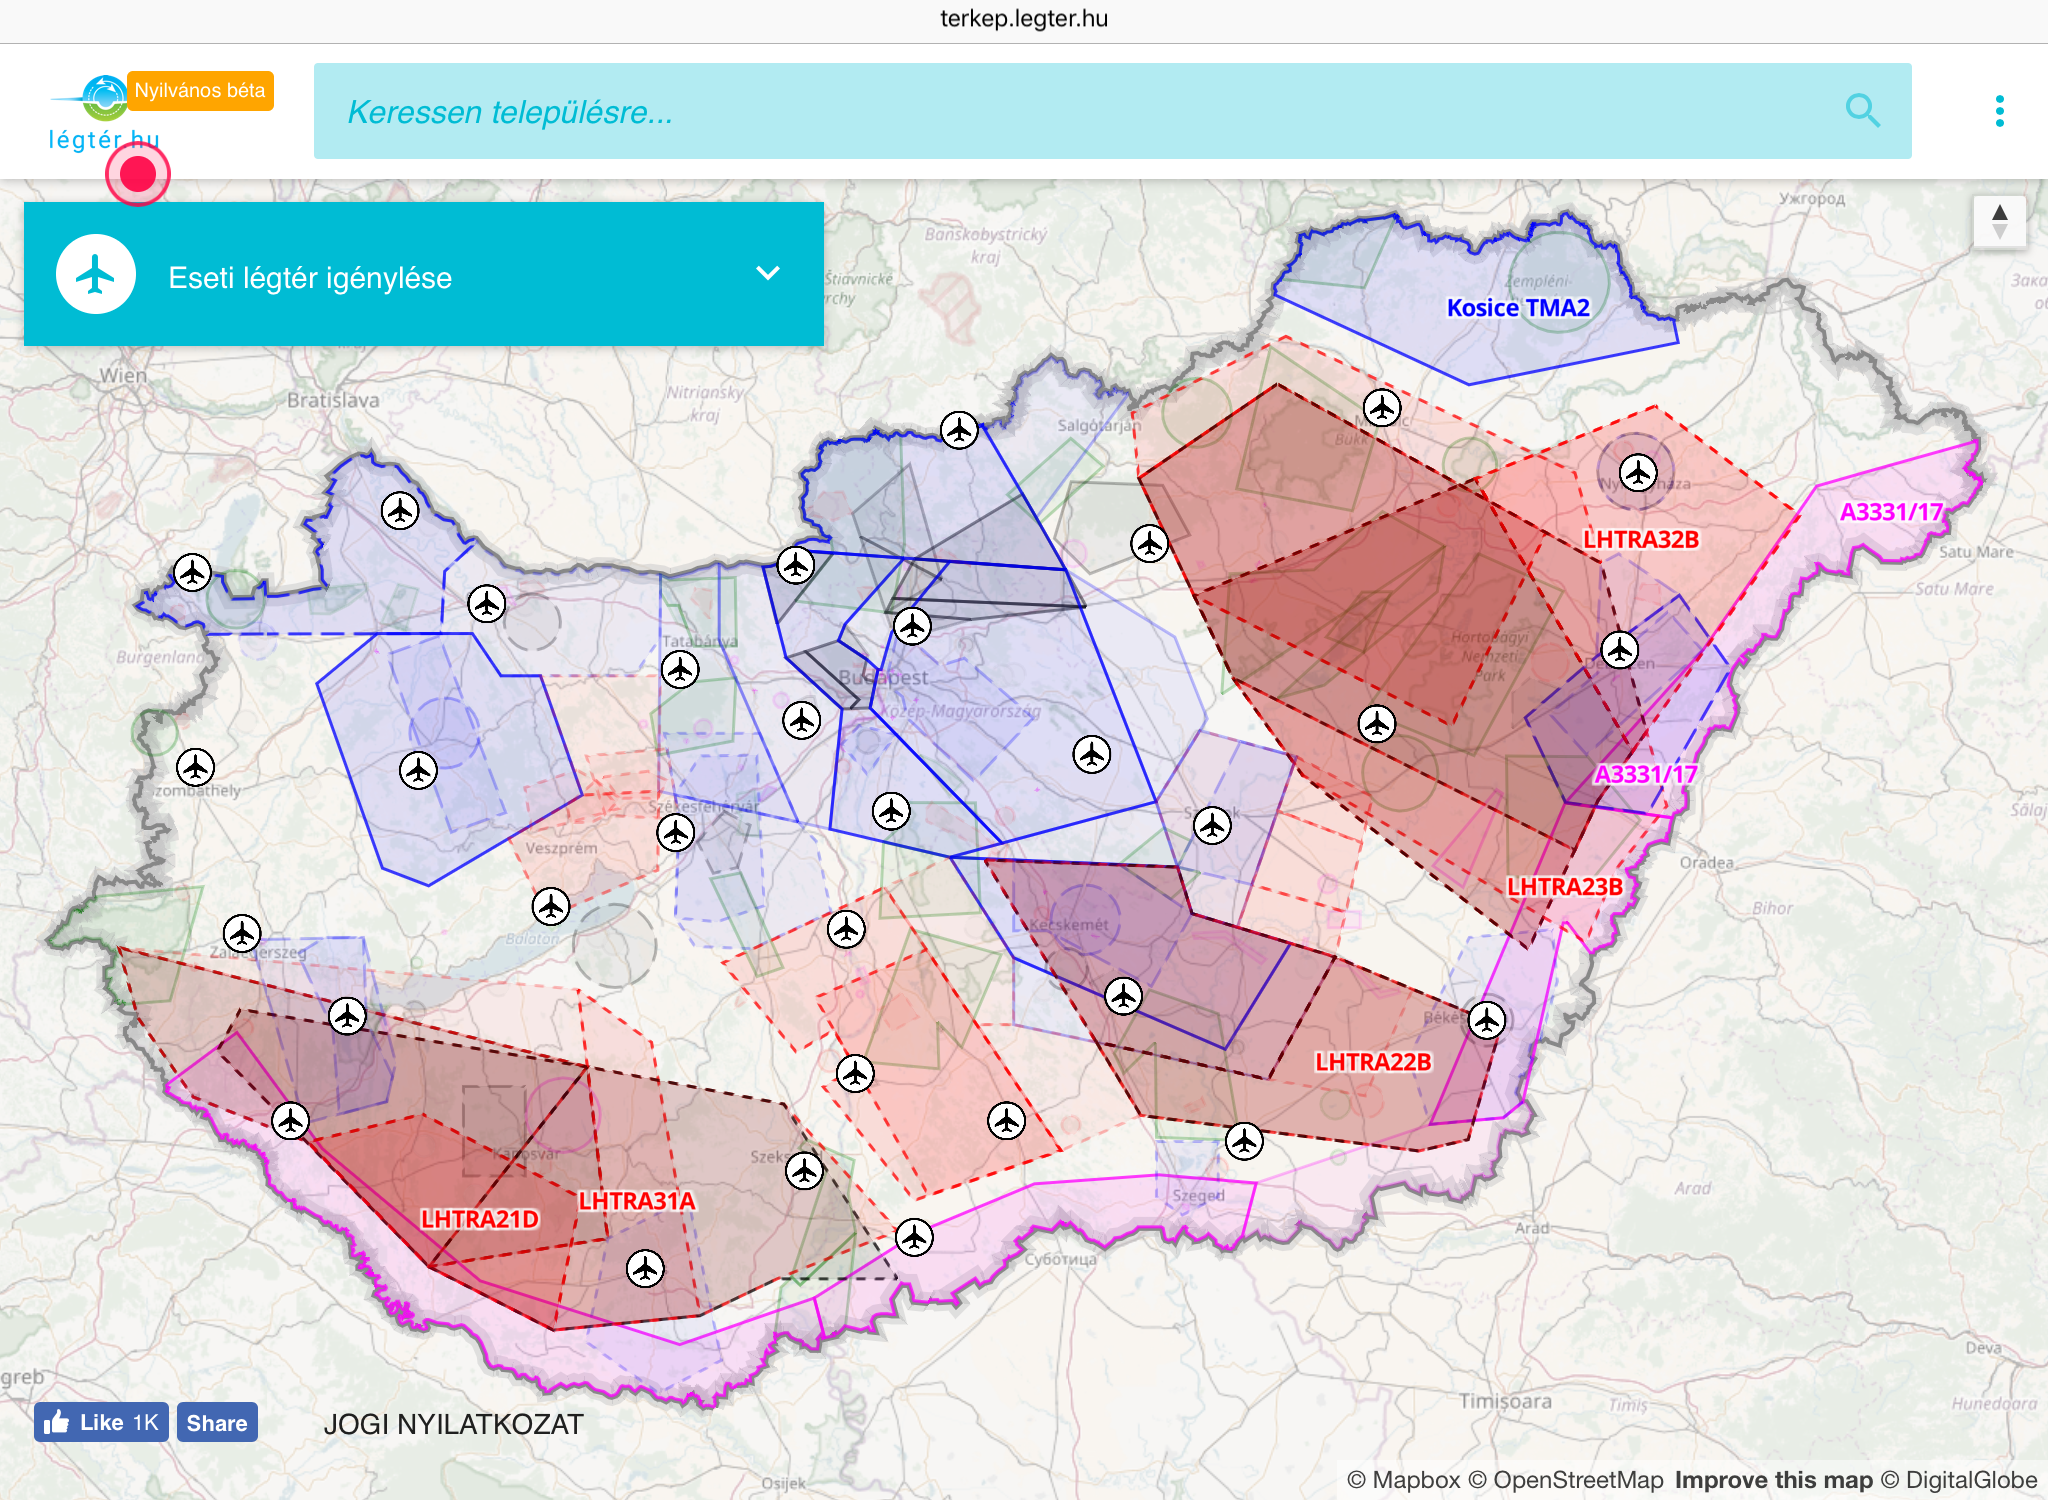 magyarország légtér térkép Online Terkep A Legterhasznalatrol Dron Info magyarország légtér térkép